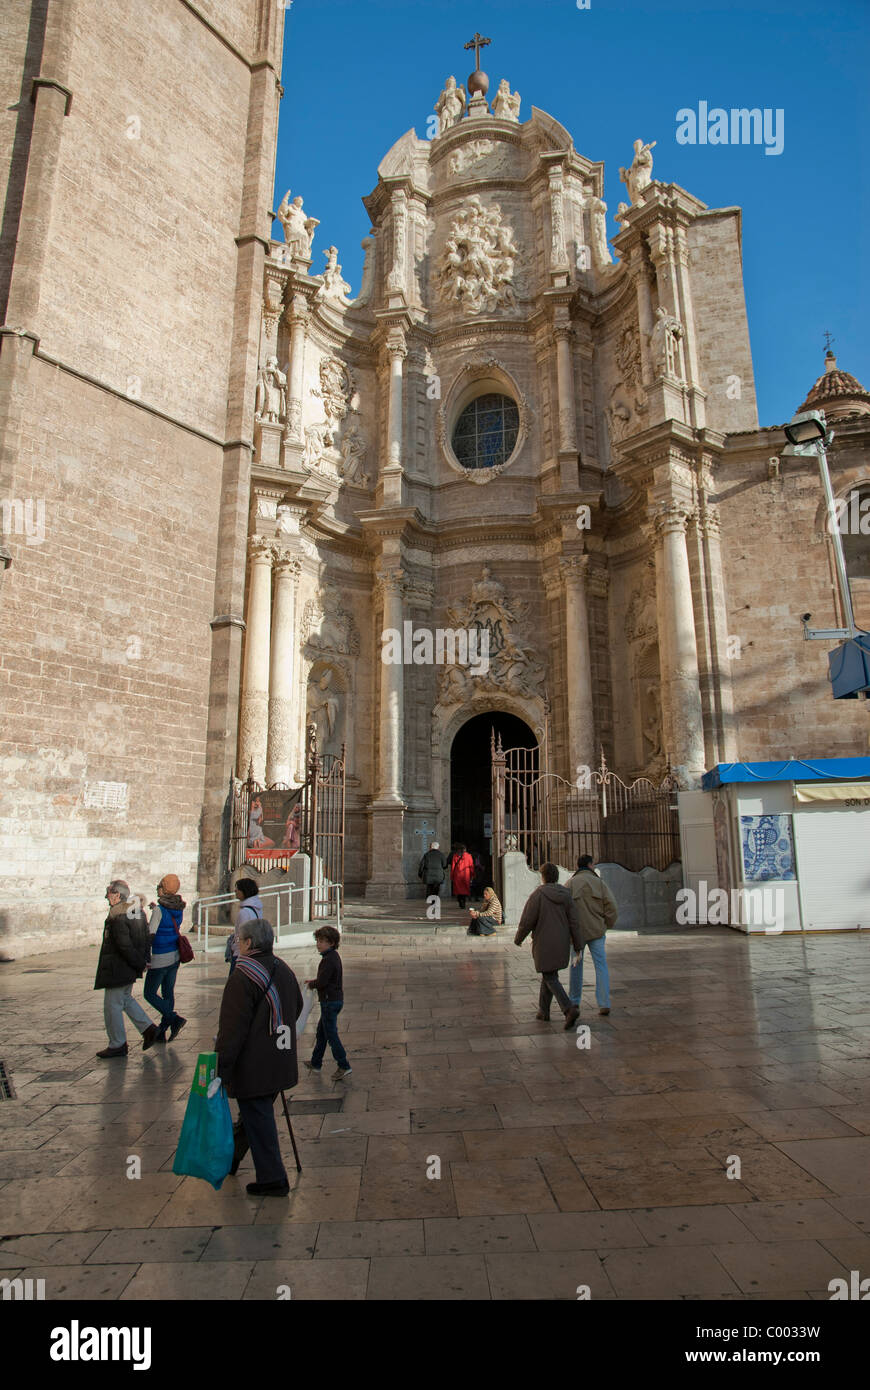 La cathédrale de la Plaza de la Reina, Espagne Banque D'Images